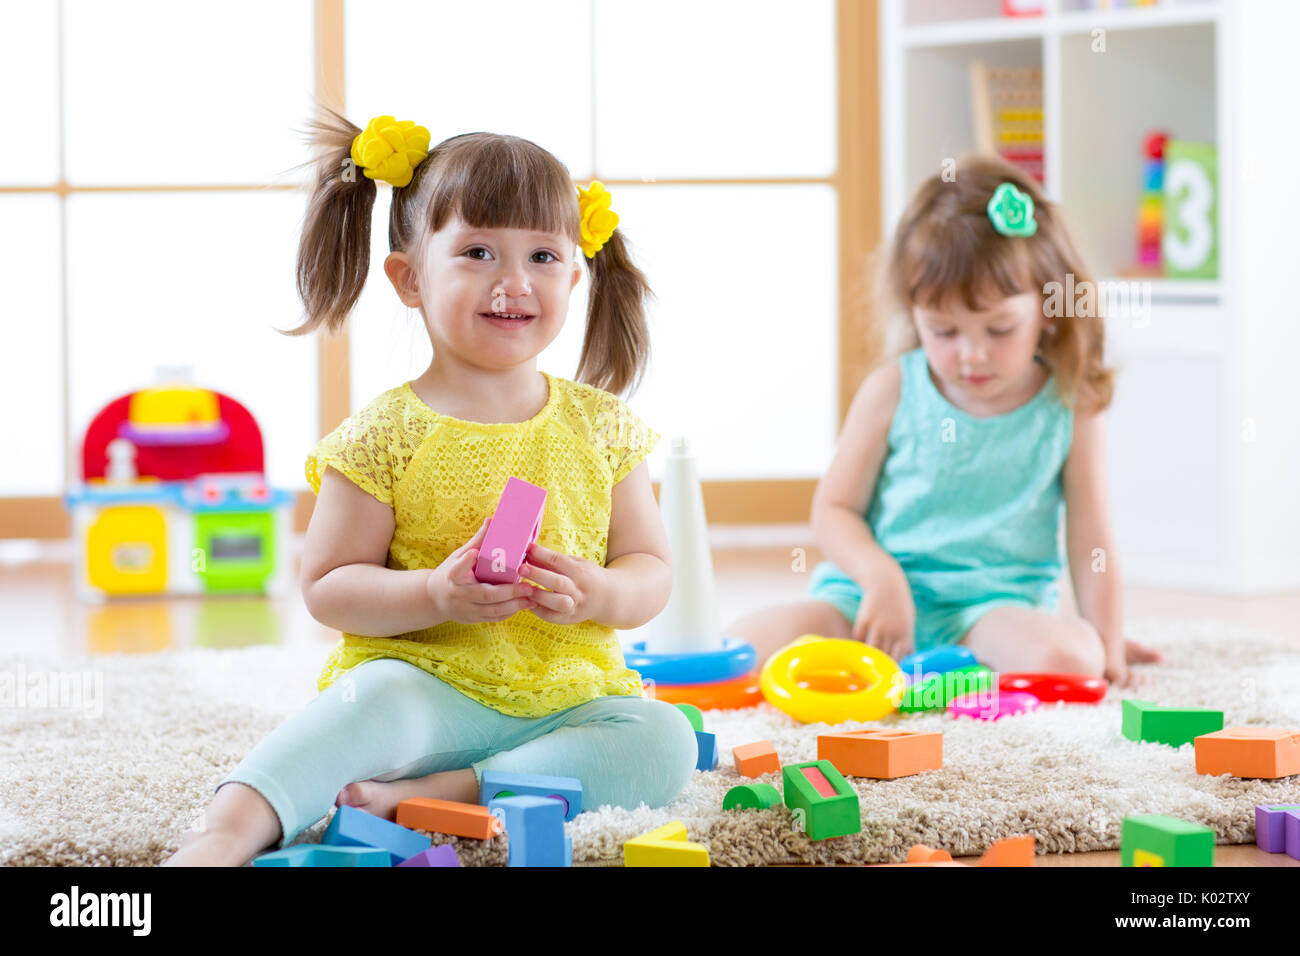 Kinder spielen zusammen. Kleinkind Kinder spielen mit Blöcken. Pädagogische Spielwaren für Vorschule und Kindergarten Kind. Kleine Mädchen bauen Pyramide Spielzeug zu Hause oder in der Kindertagesstätte. Stockfoto